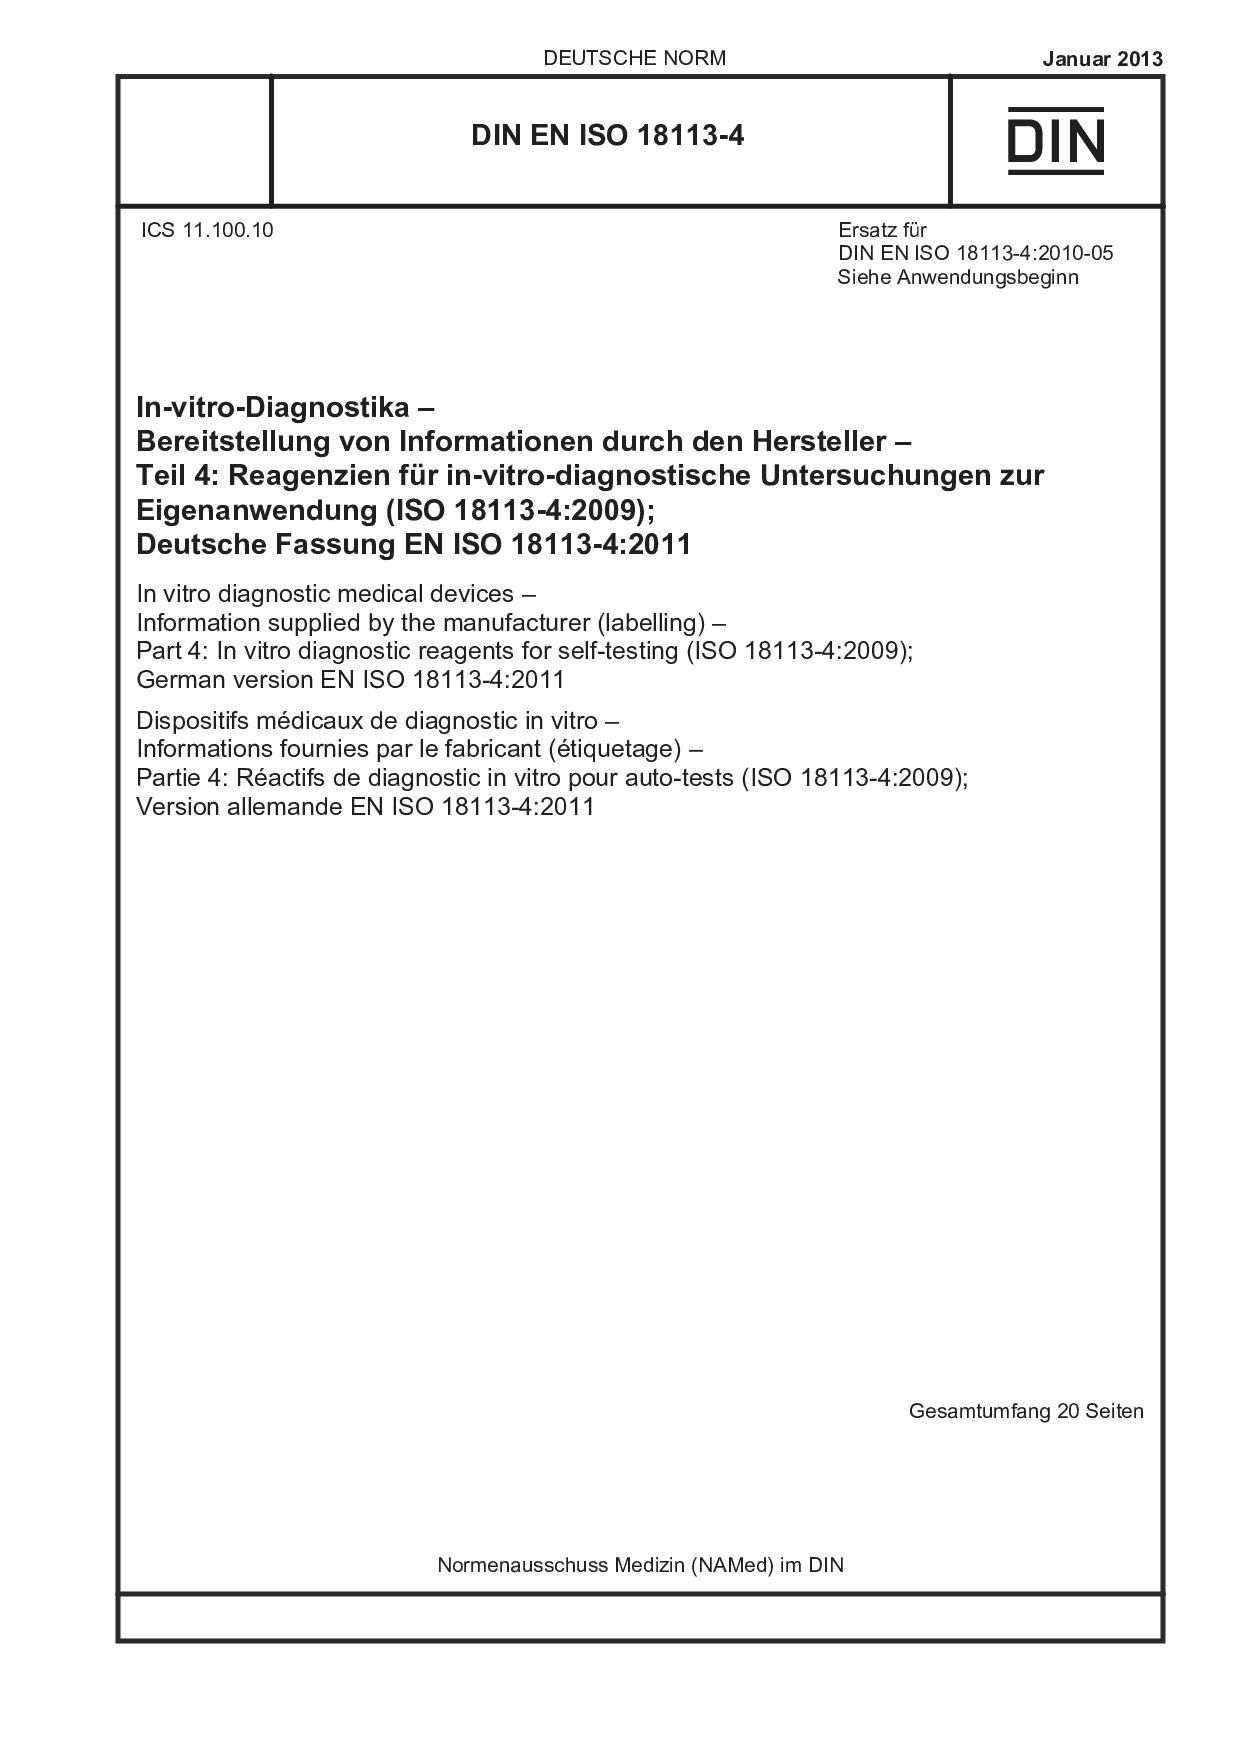 DIN EN ISO 18113-4:2013